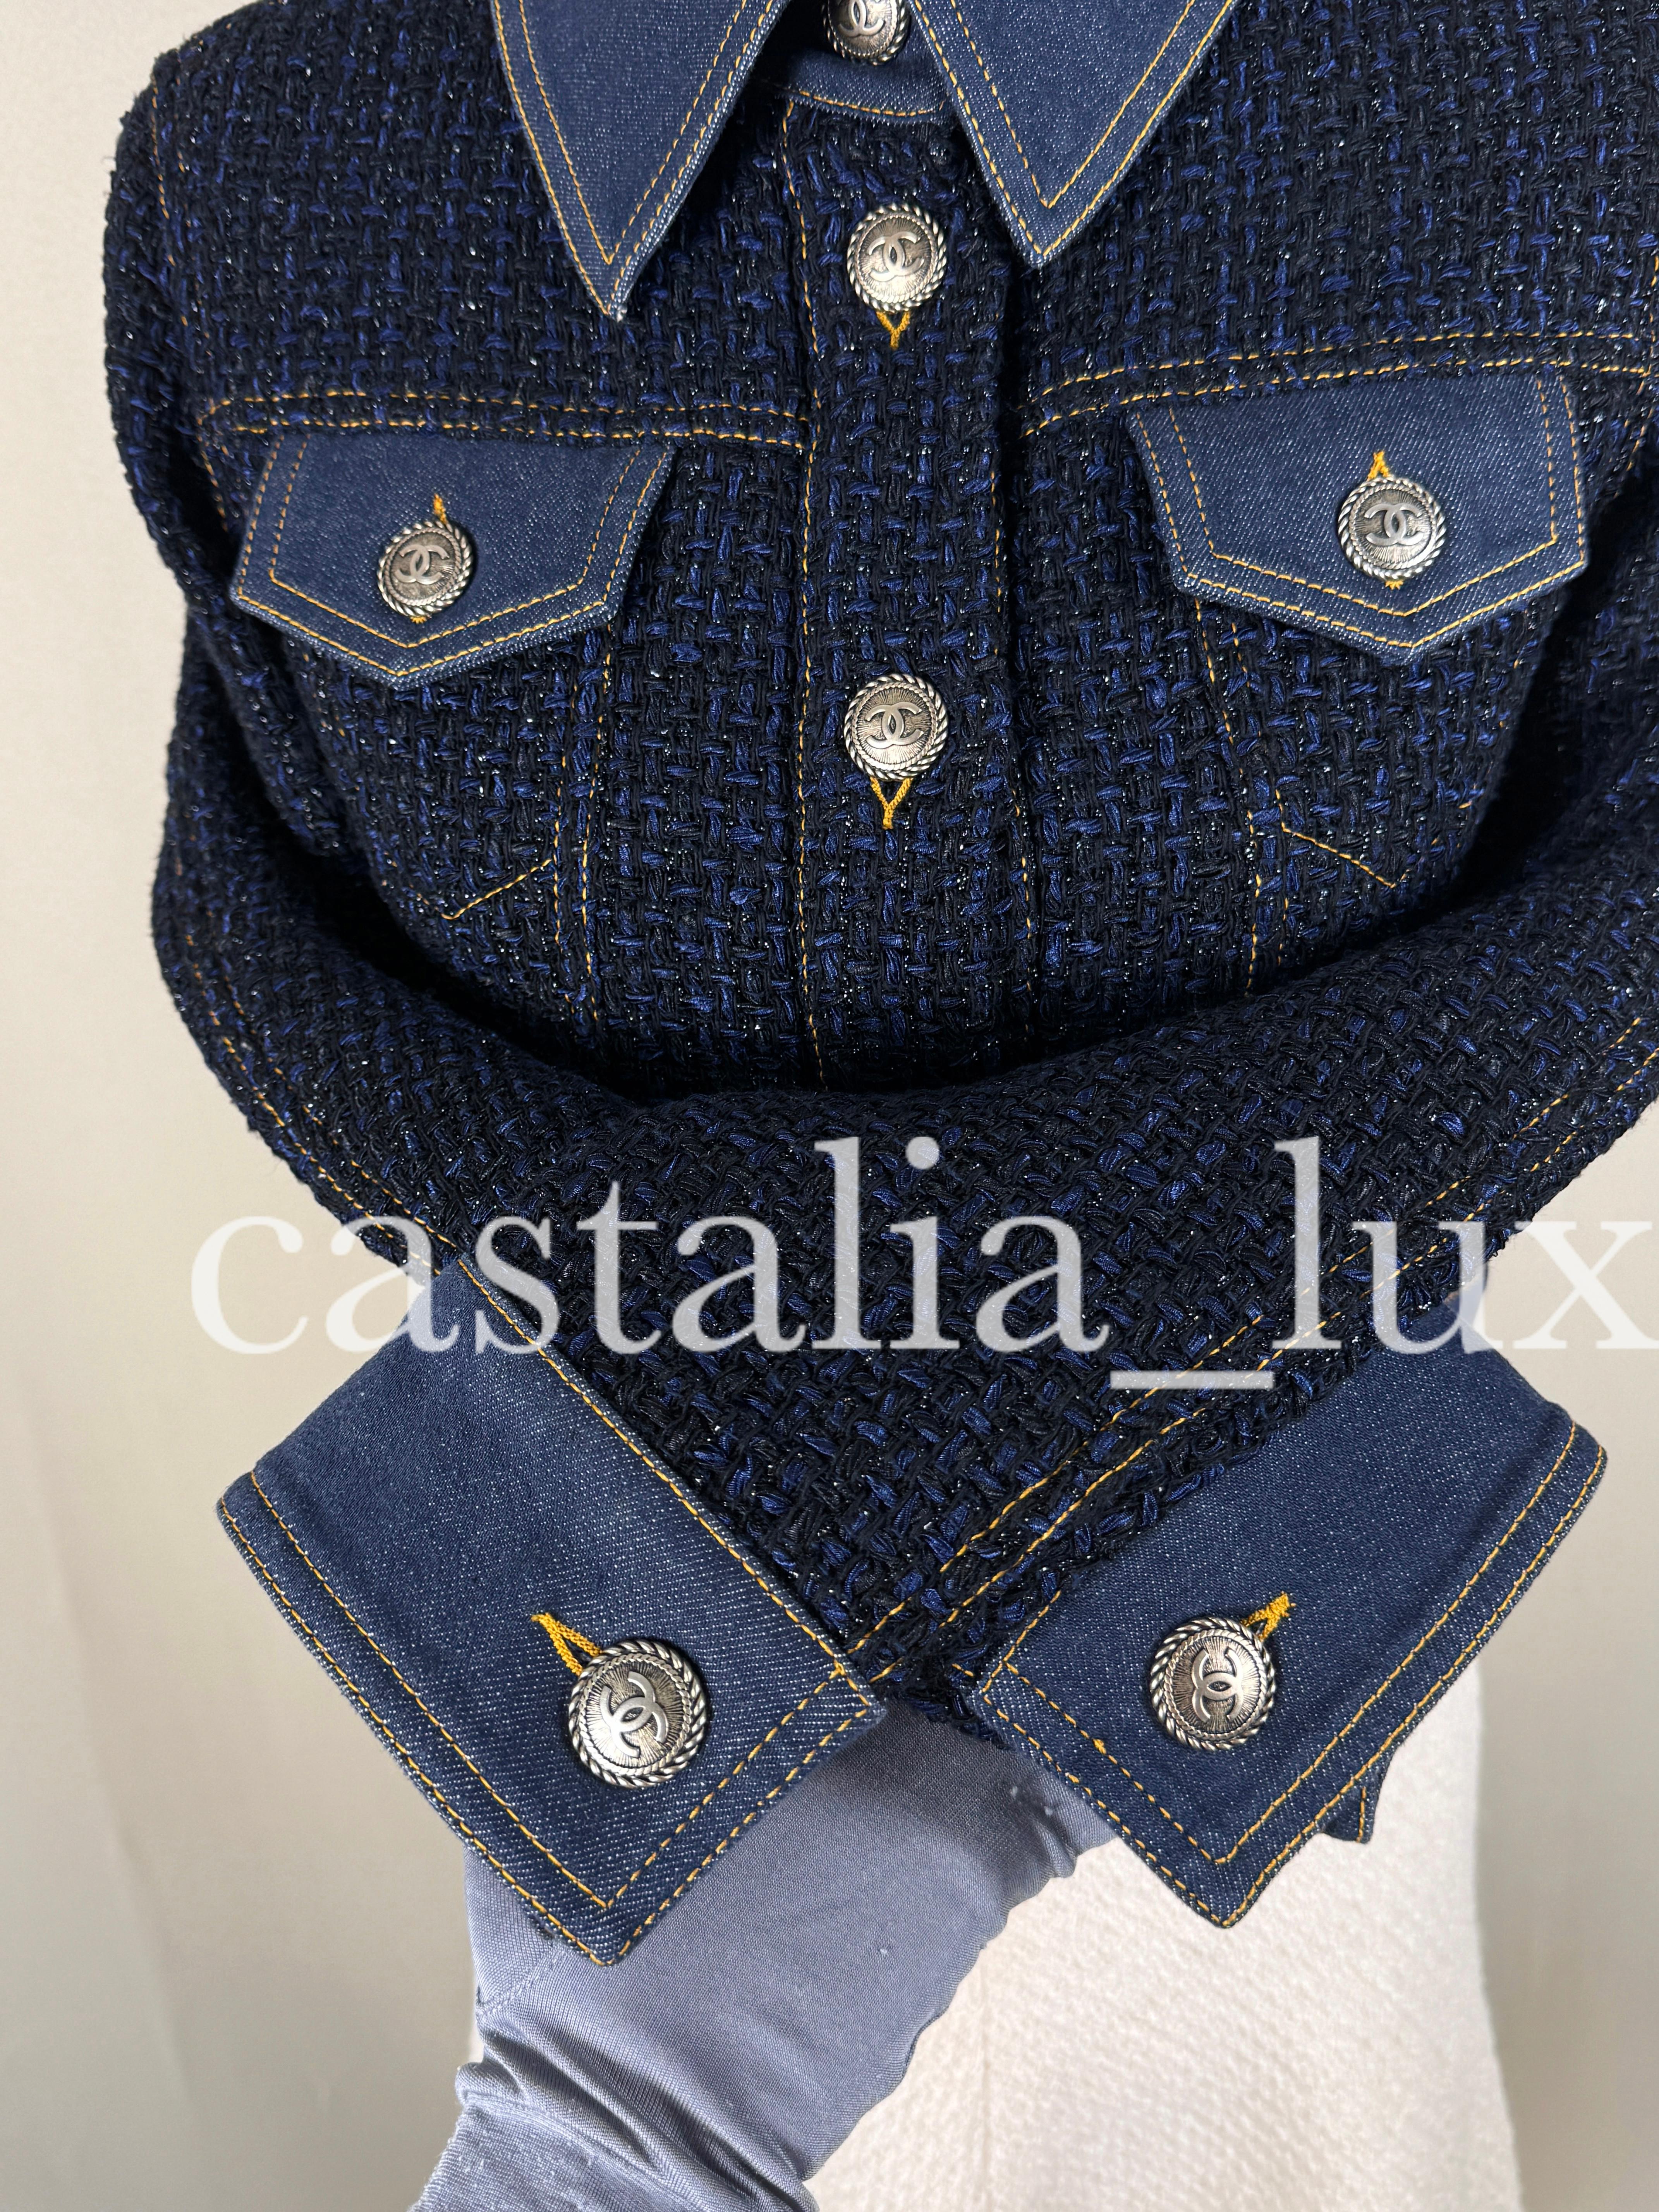 Chanel New Bestseller Lesage Tweed Jacket For Sale 6